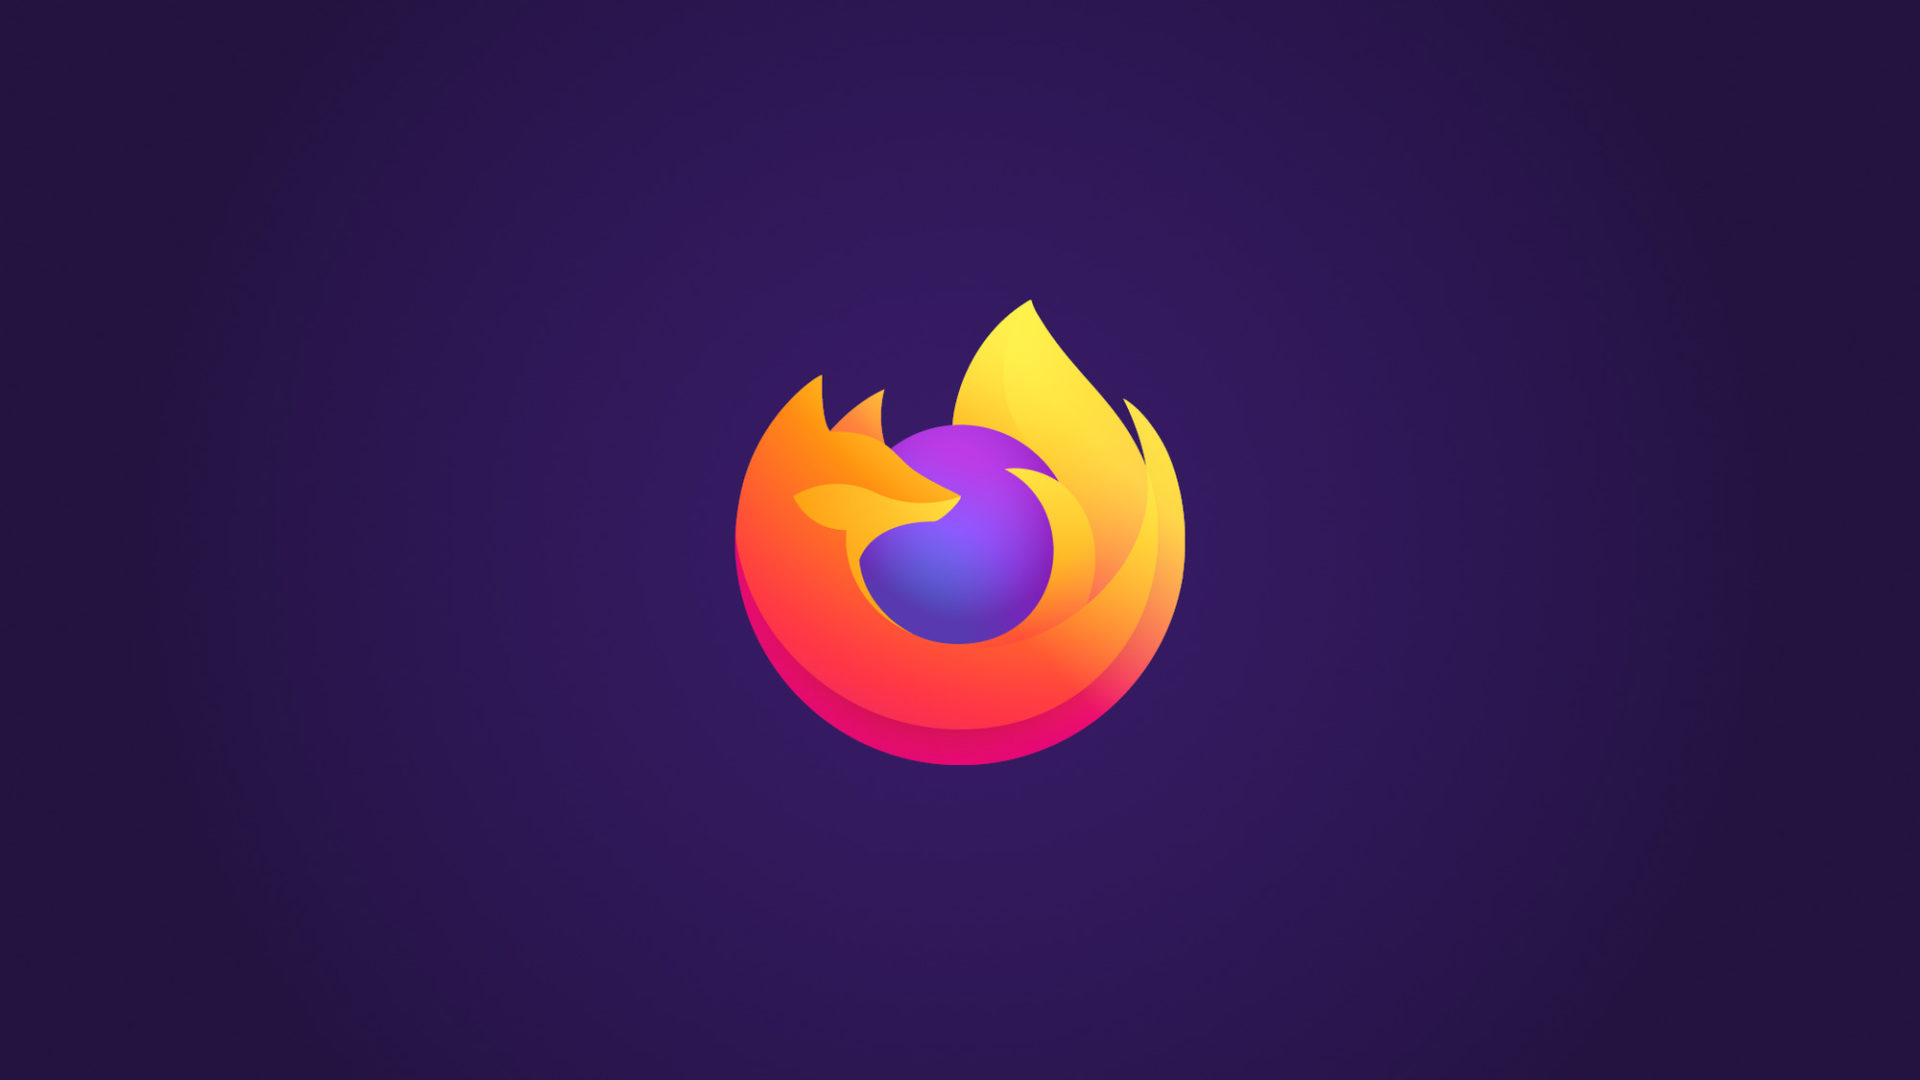 ผู้ใช้งาน Firefox ลดลงกว่า 46 ล้านราย ในระยะเวลา 3 ปี!